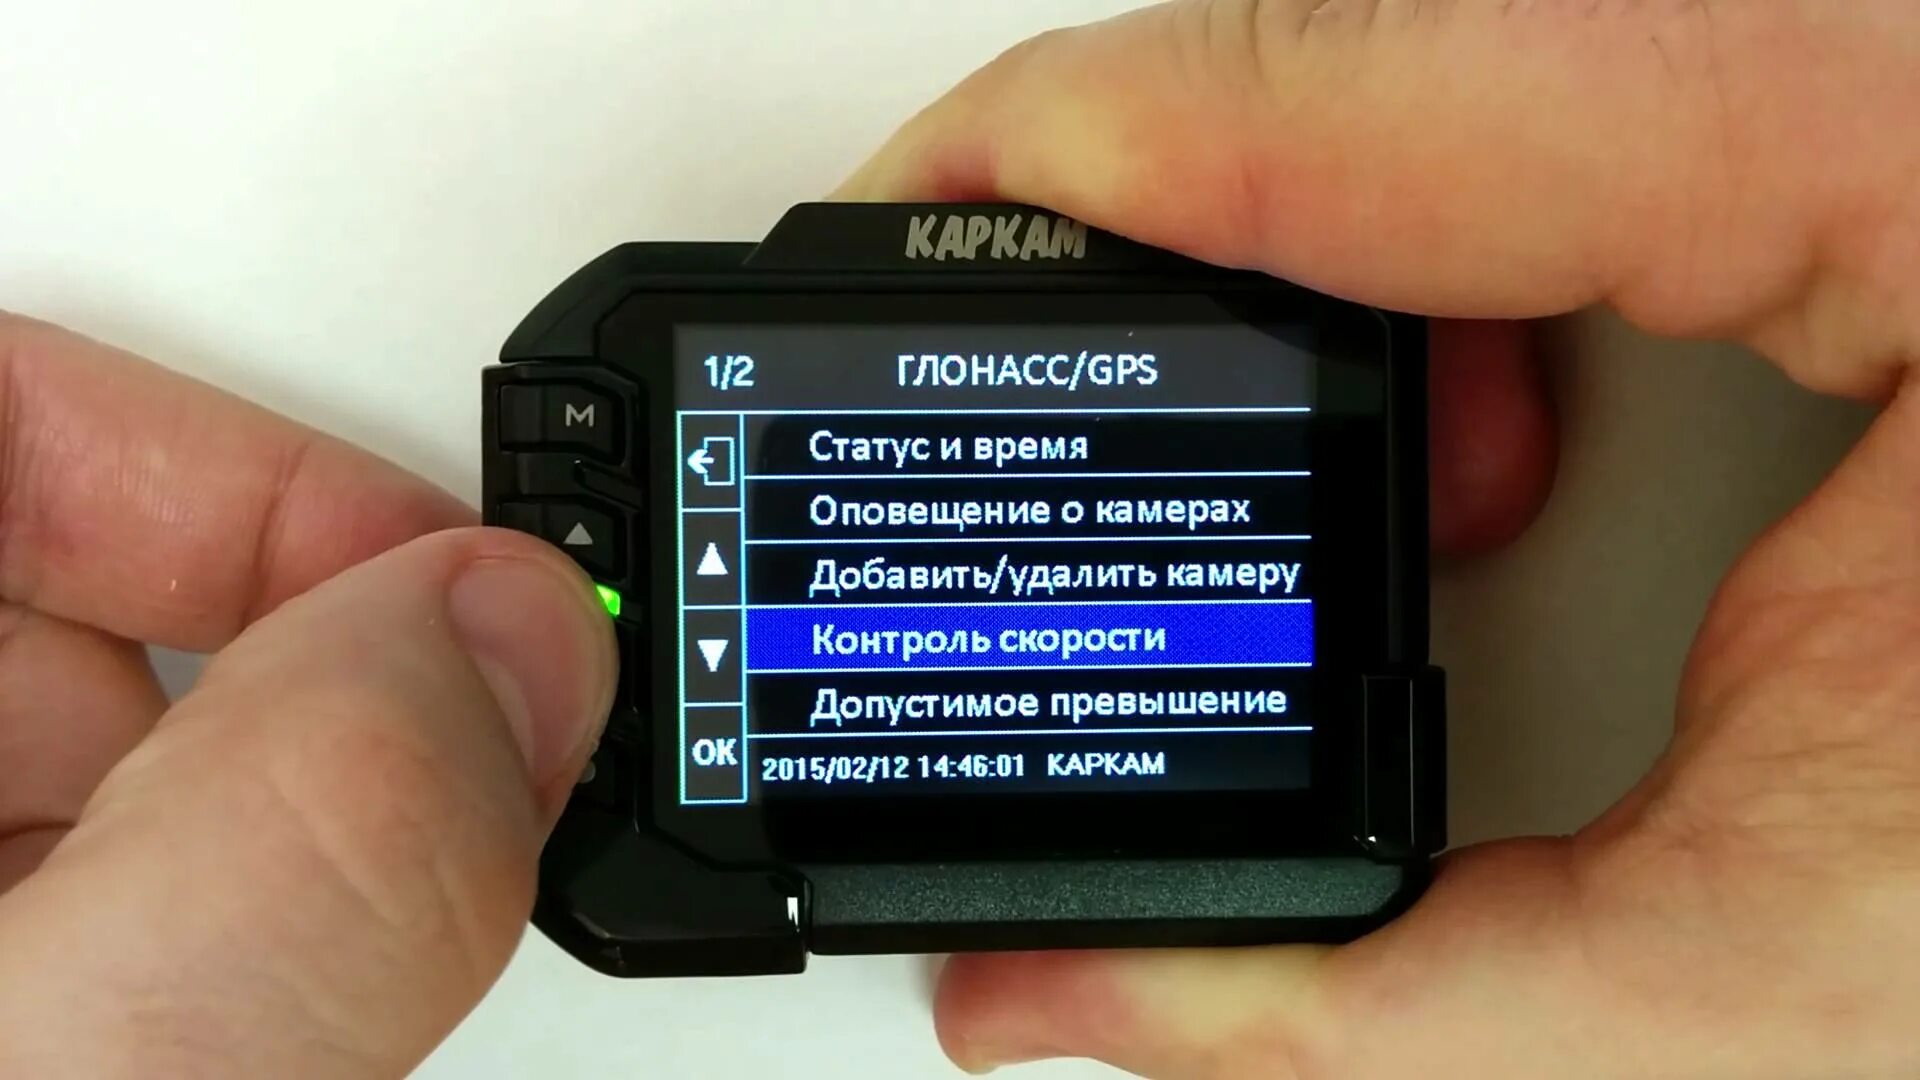 Джетор т2. Видеорегистратор carcam т2, GPS, ГЛОНАСС. Фотокамера с GPS модулем. Регистратор с контролем скорости. Установка и настройка видеорегистратора.